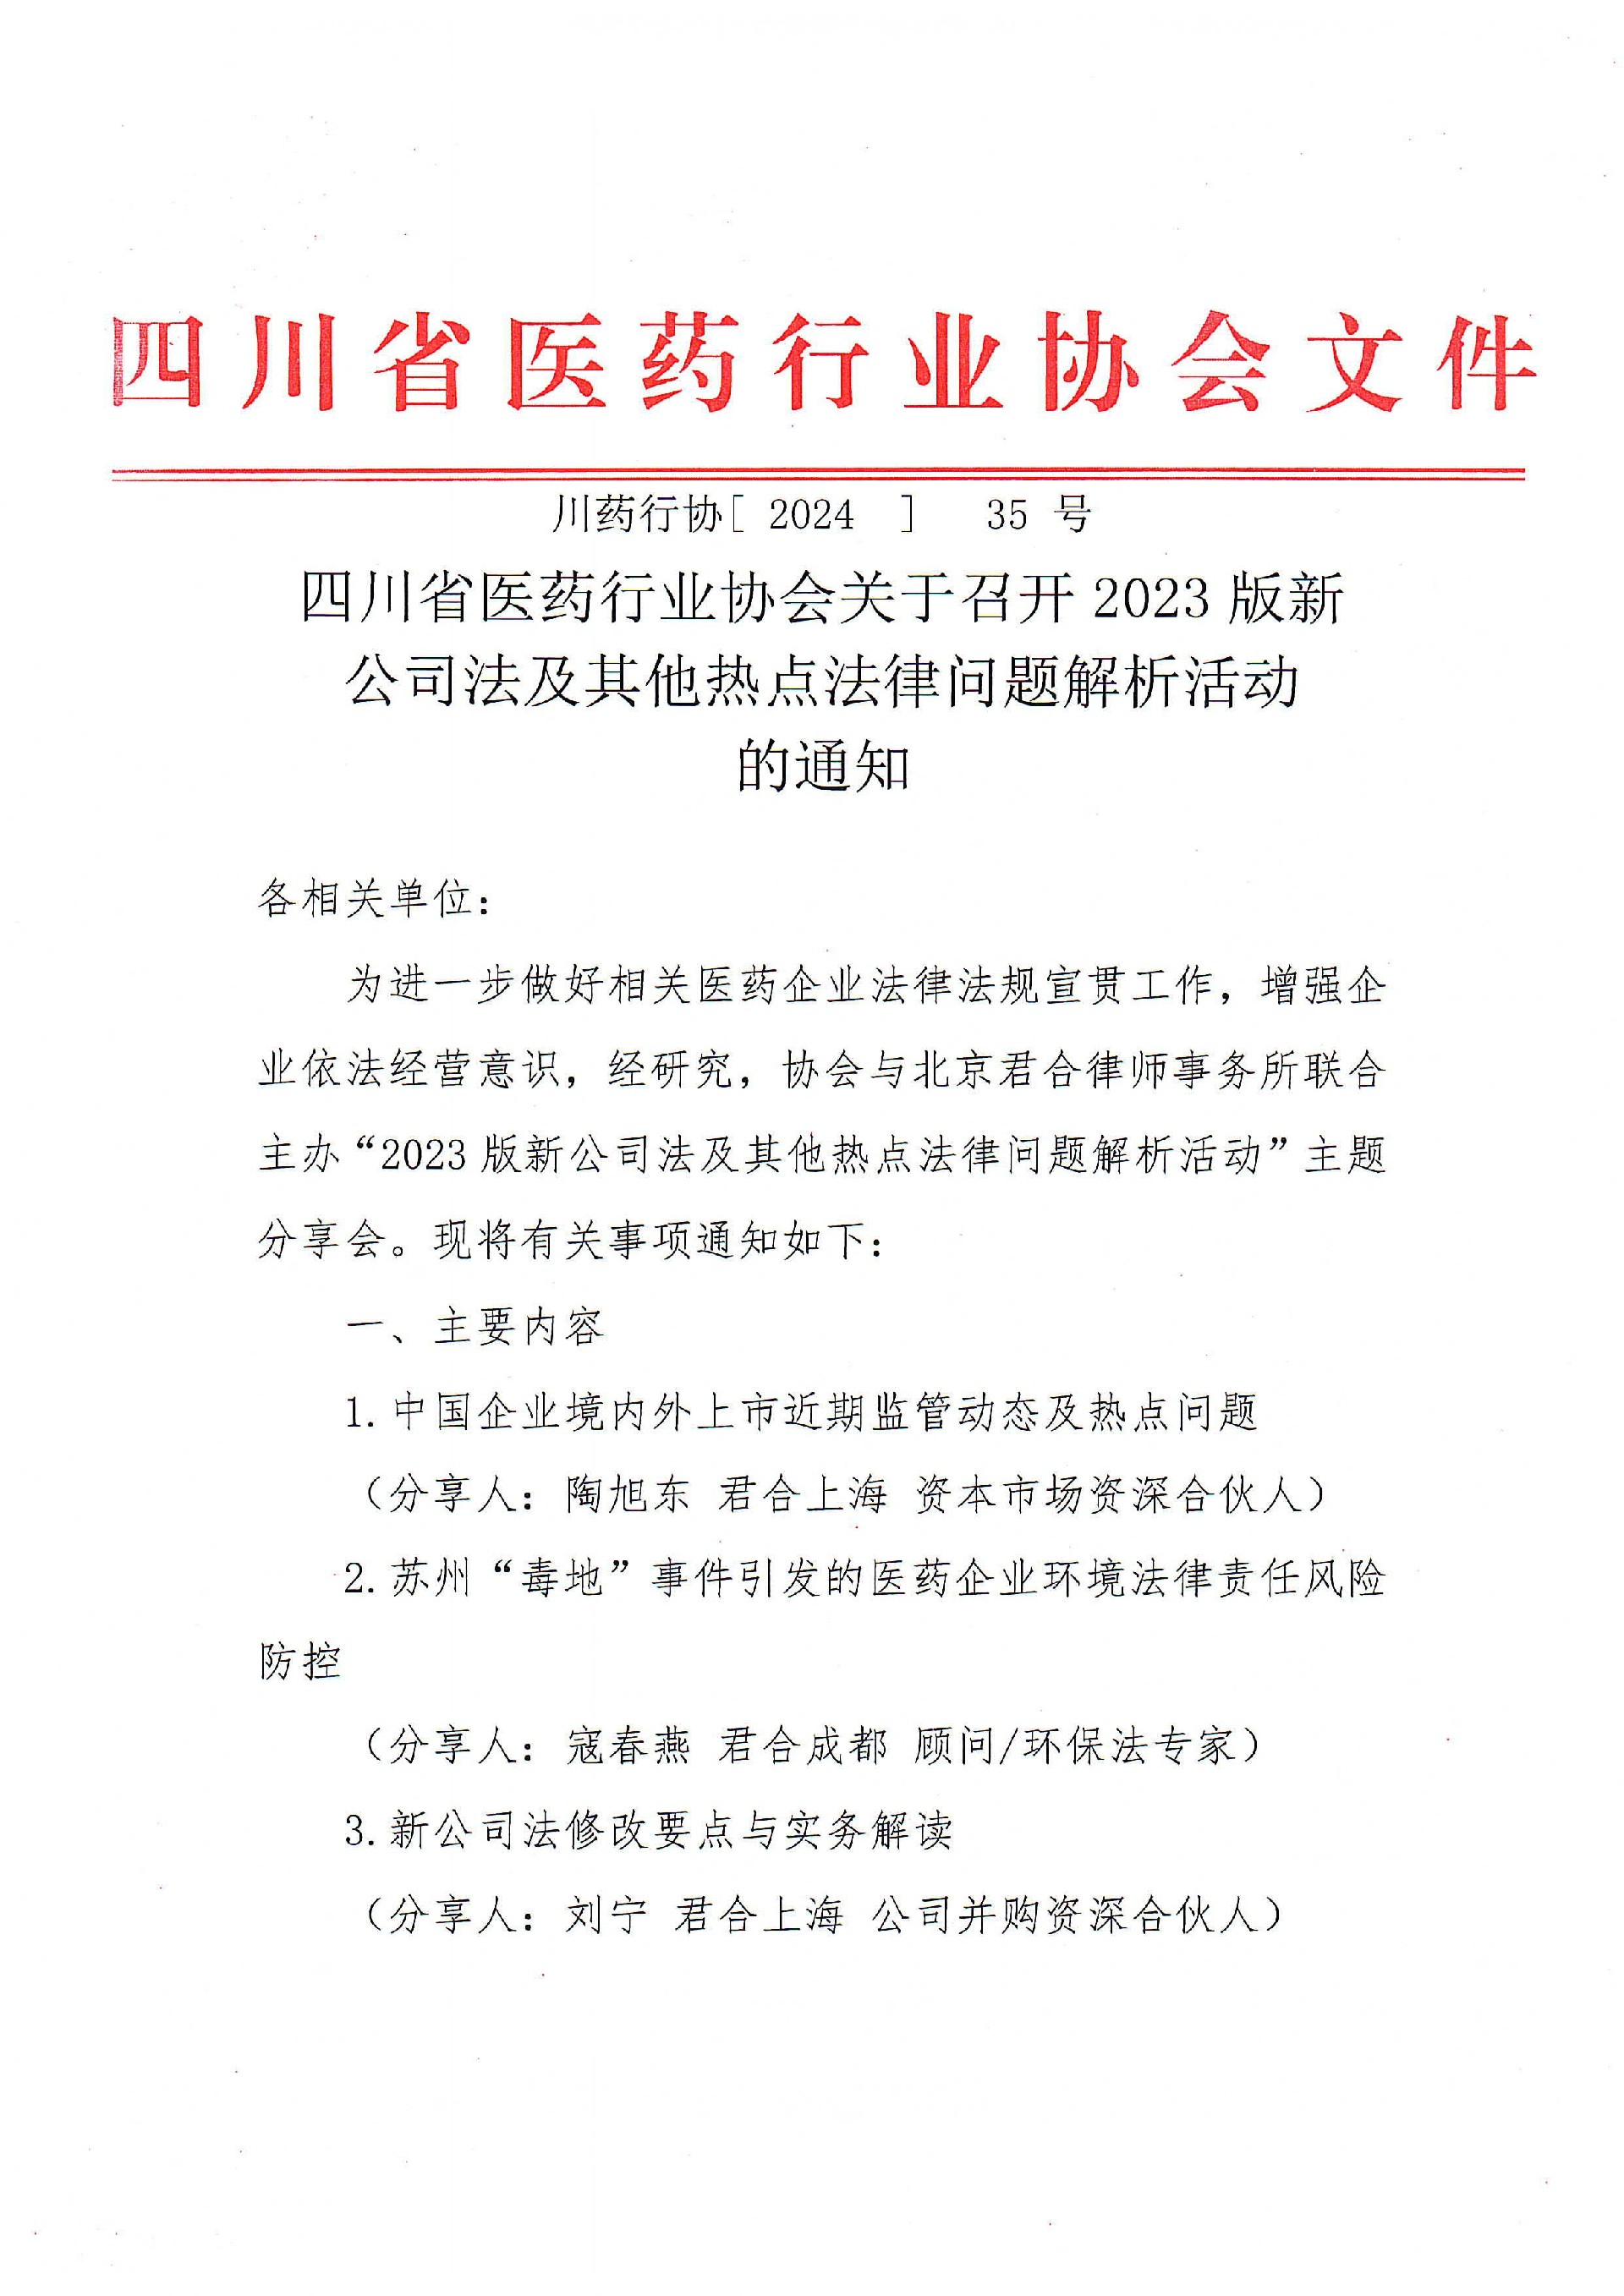 四川省医药行业协会关于召开2023版新公司及其他热点法律问题解析活动的通知_00.jpg